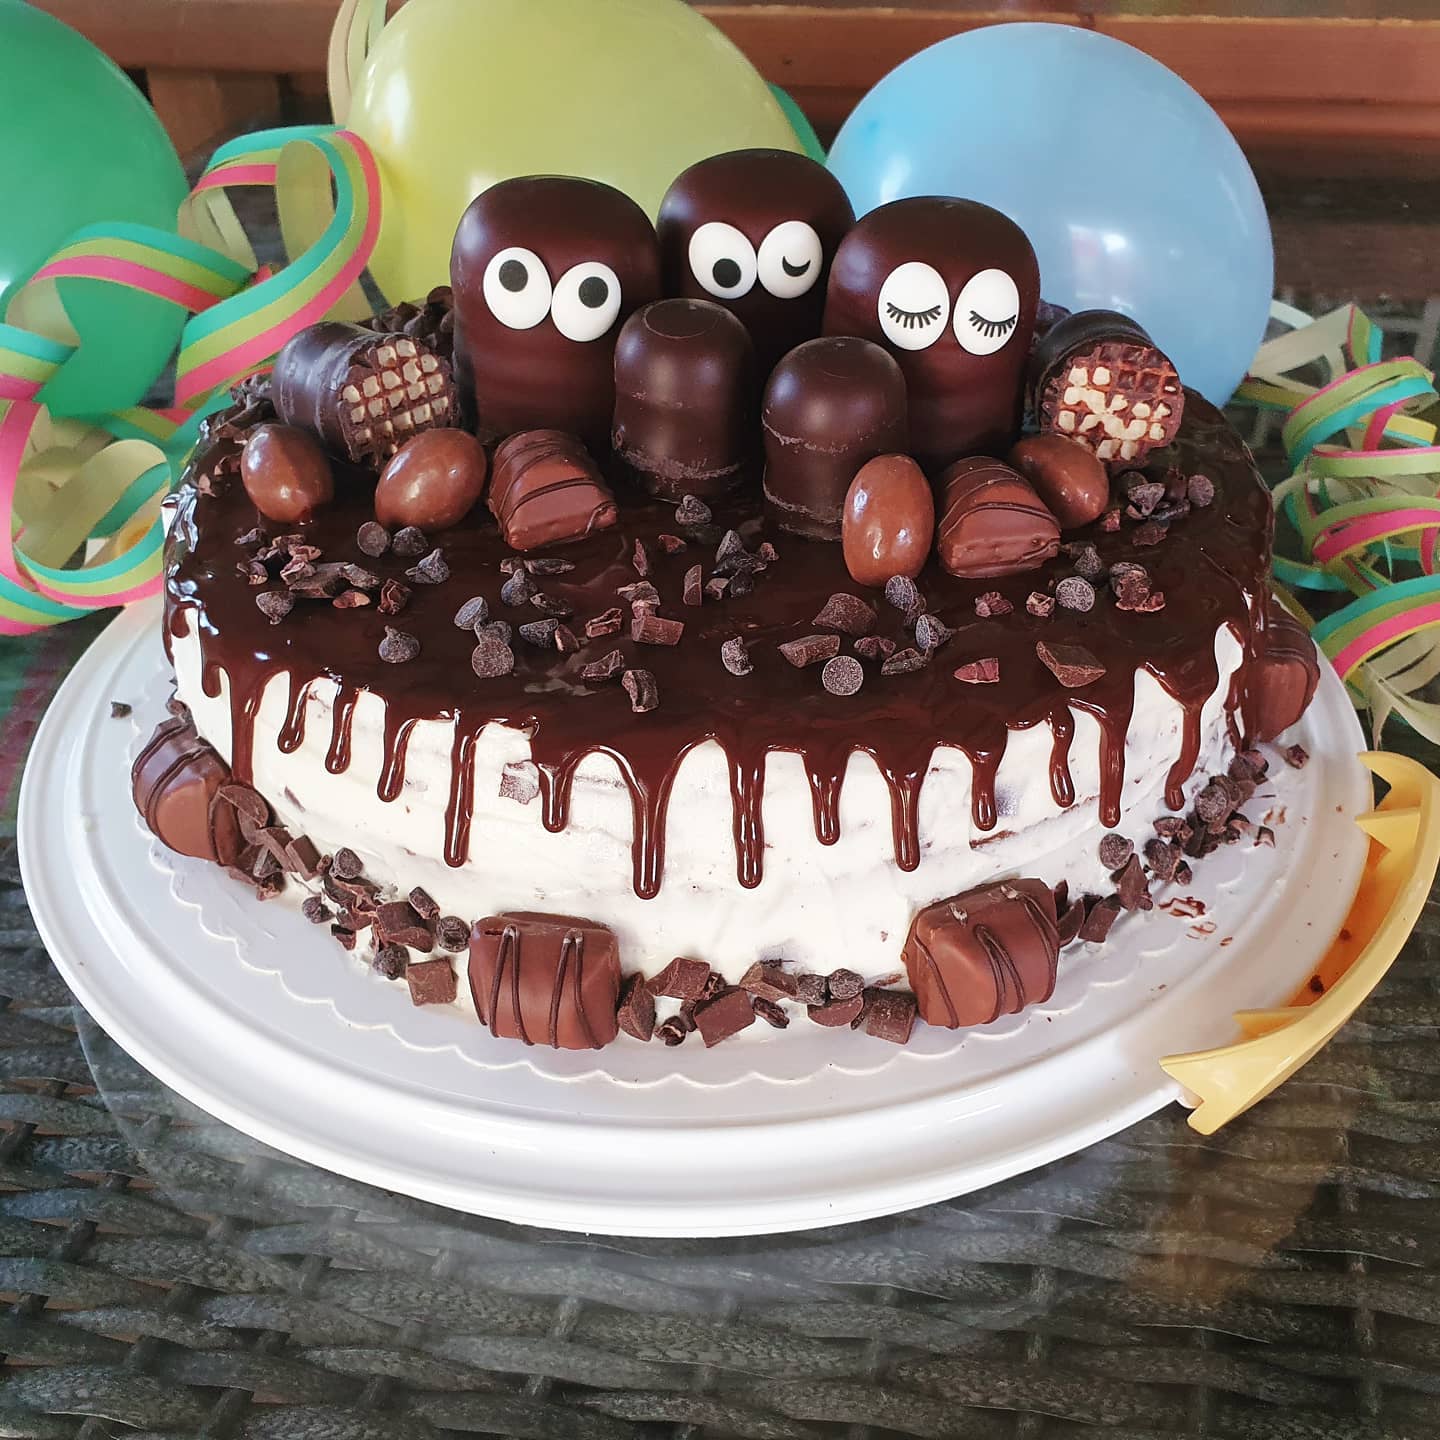 Chocolate overload cake 🤤🍫
#kunterbuntich #backen #schokolade #chocolateoverload #schaumküsse #dickmanns #kindergeburtstag